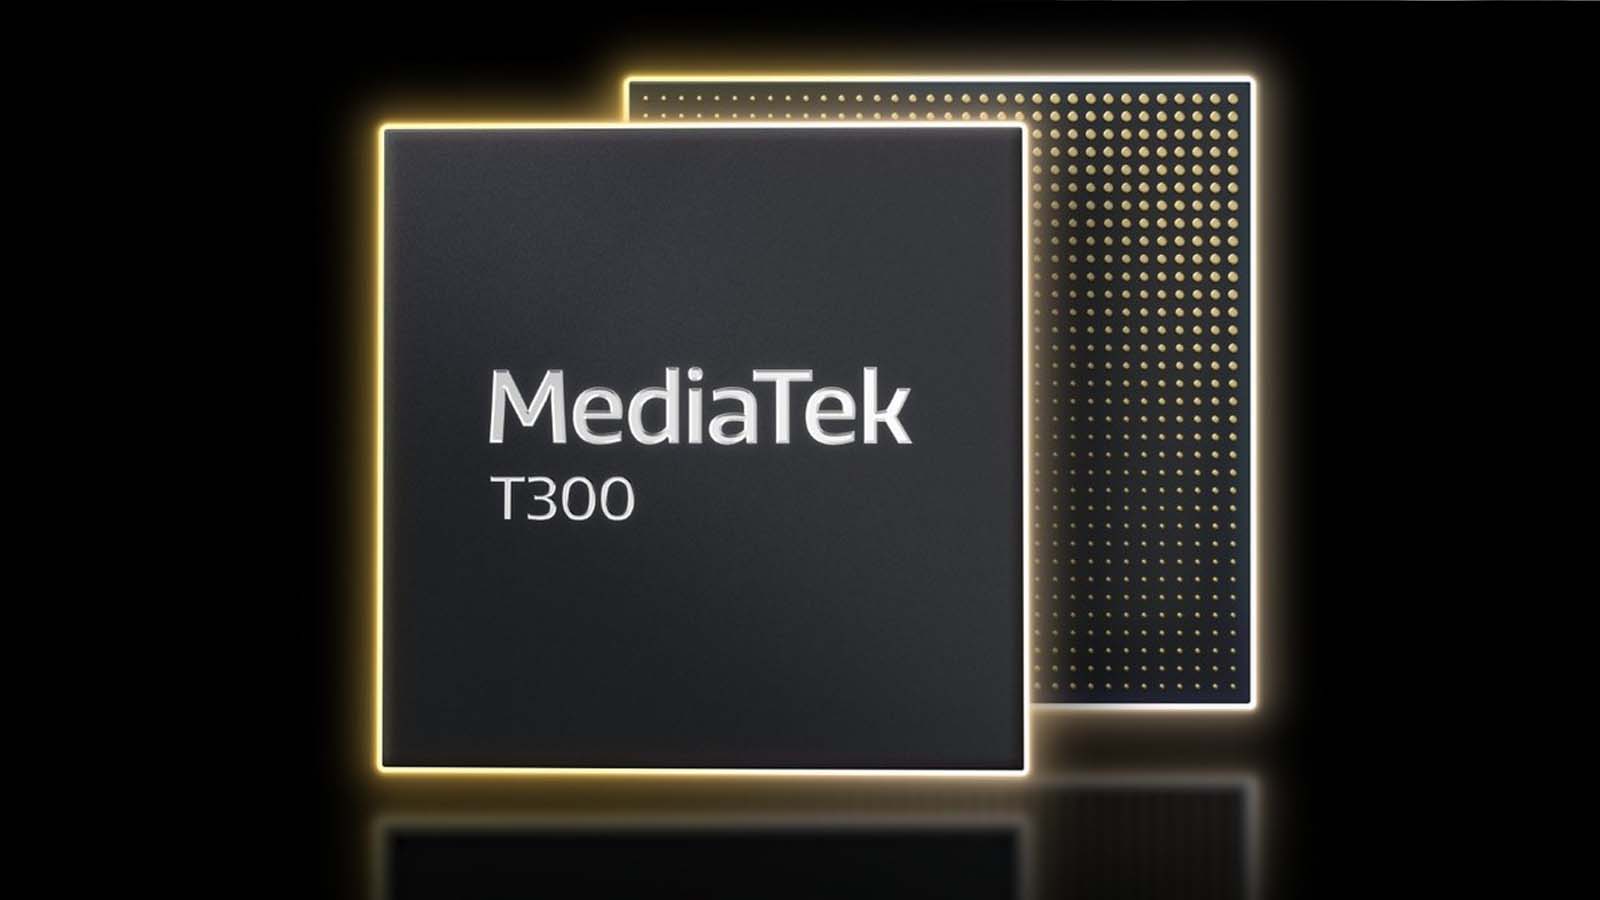 T300, la next-gen IoT di MediaTek per sicurezza video e logistica